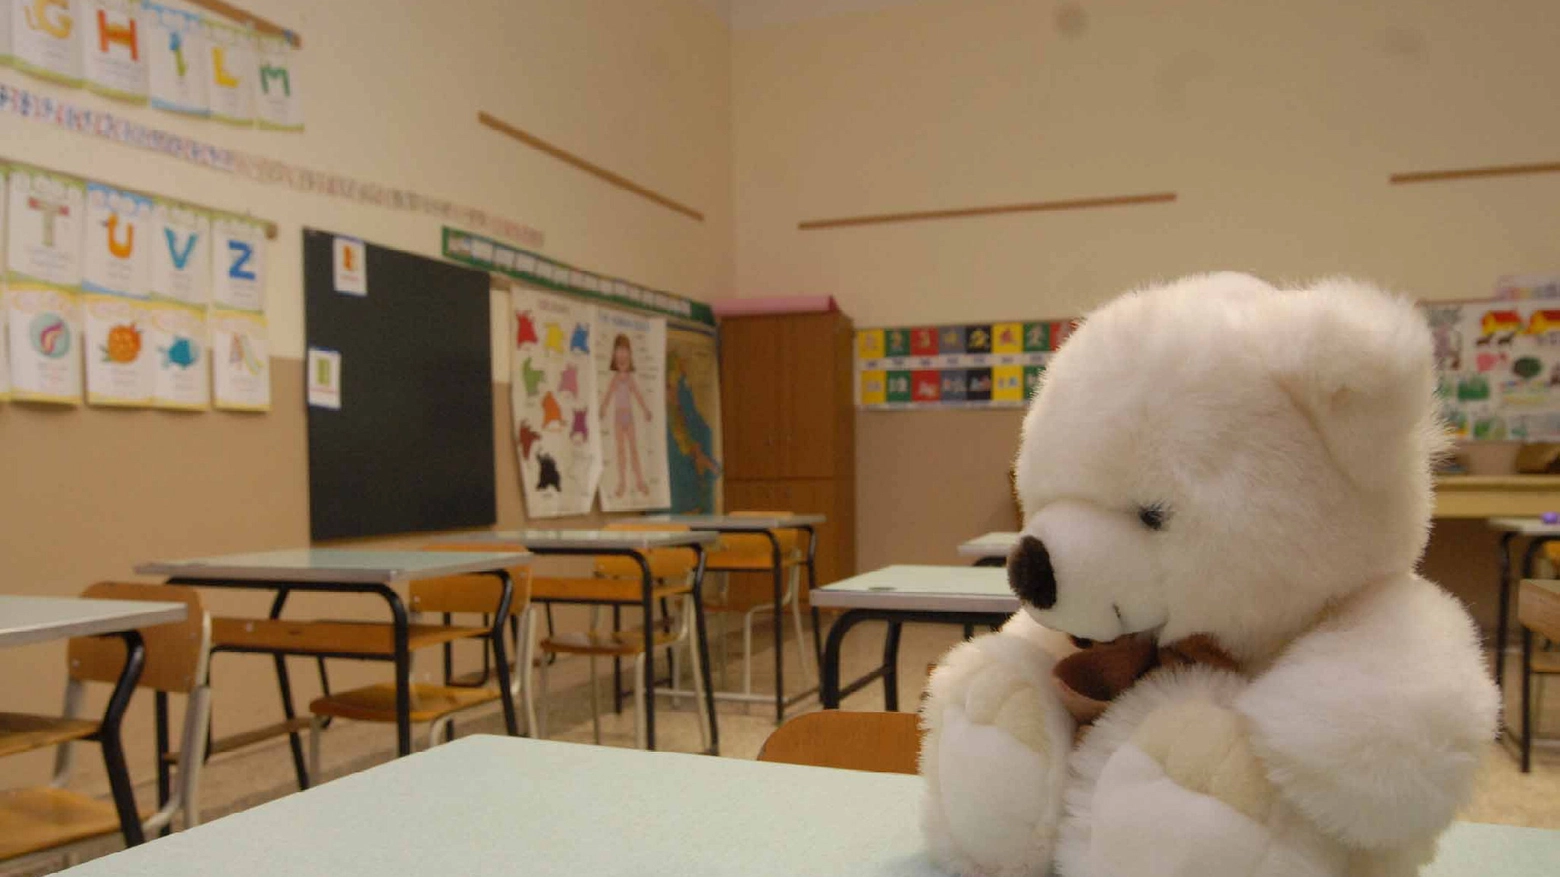 Coronavirus, scuole chiuse in Emilia Romagna per una settimana (Ansa)